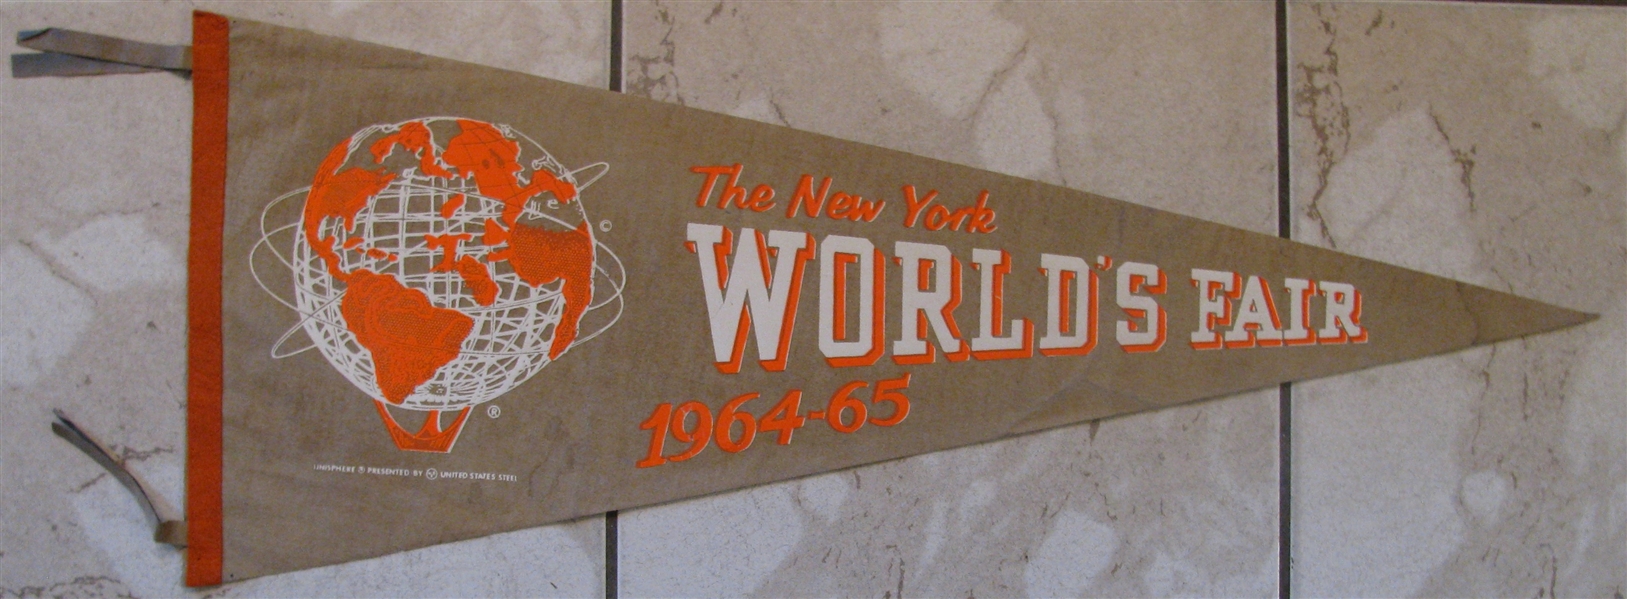 1964-65 NEW YORK WORLD'S FAIR PENNANT